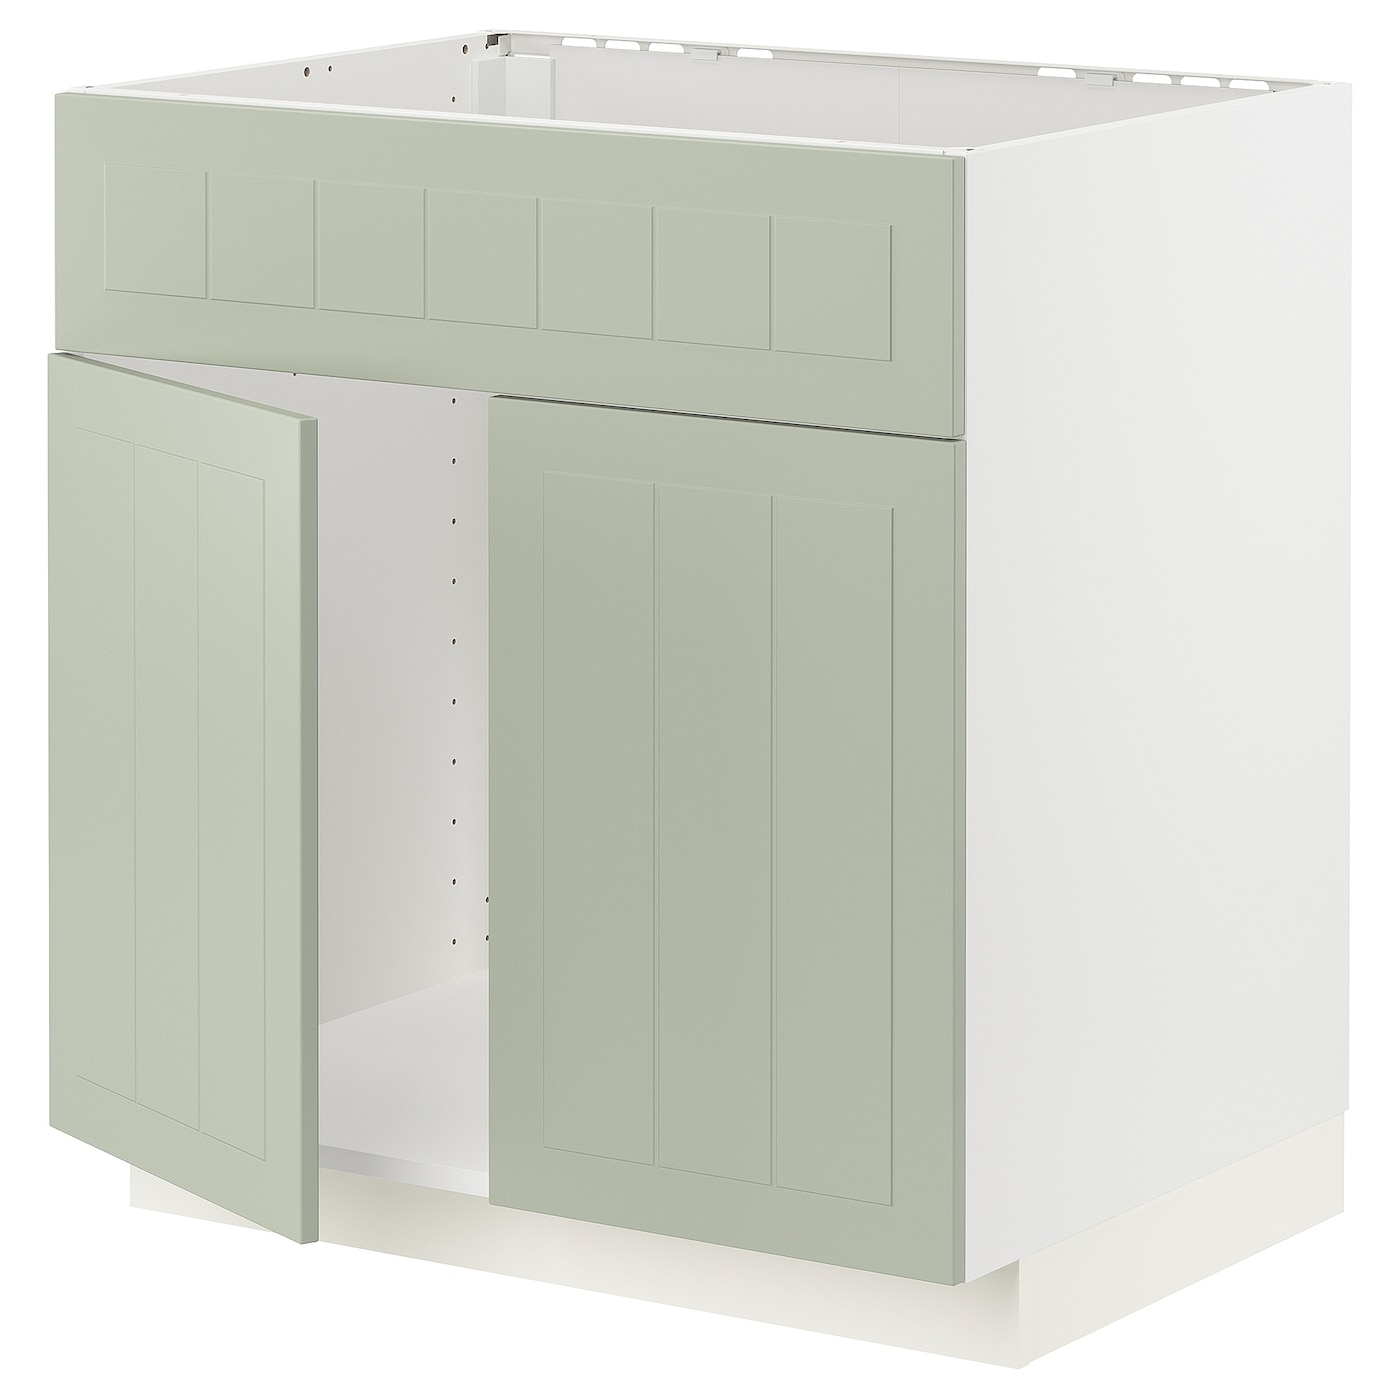 Напольный шкаф - METOD IKEA/ МЕТОД ИКЕА,  88х80 см, белый/светло-зеленый